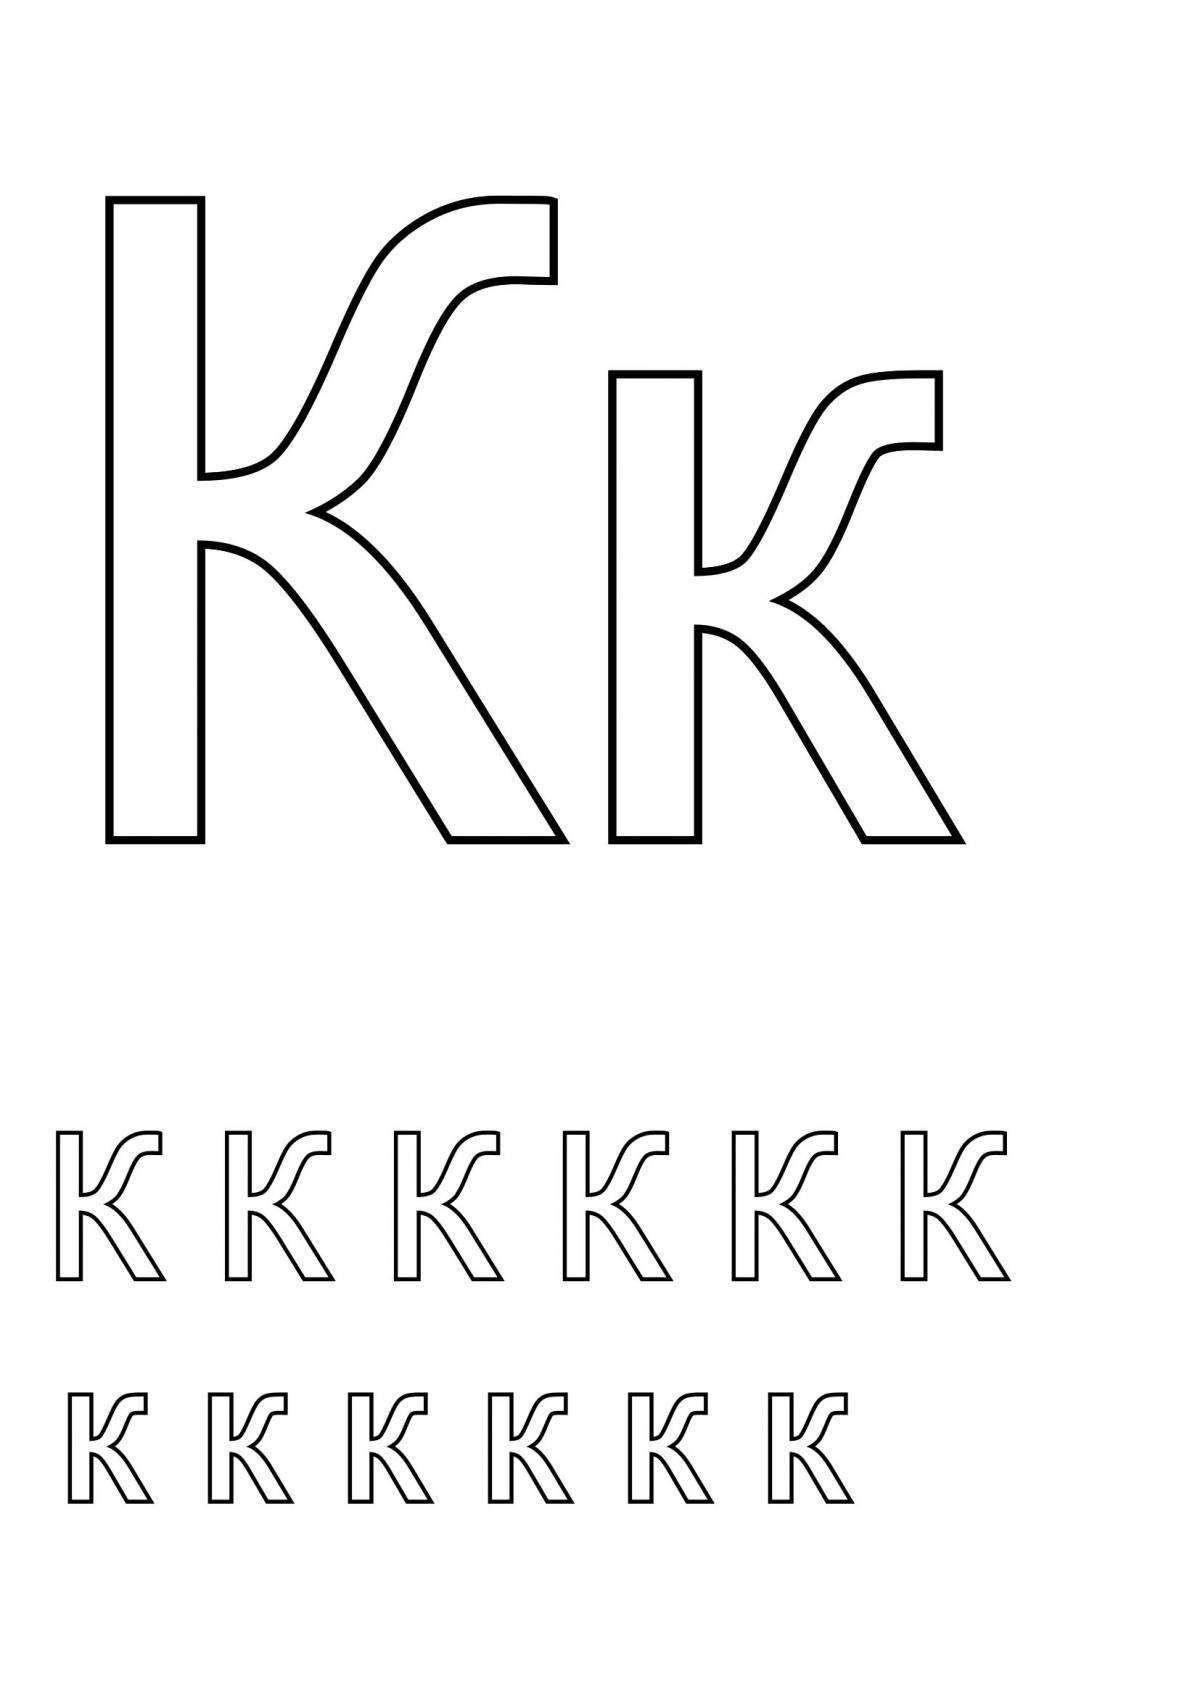 Colouring spellbinding letter k